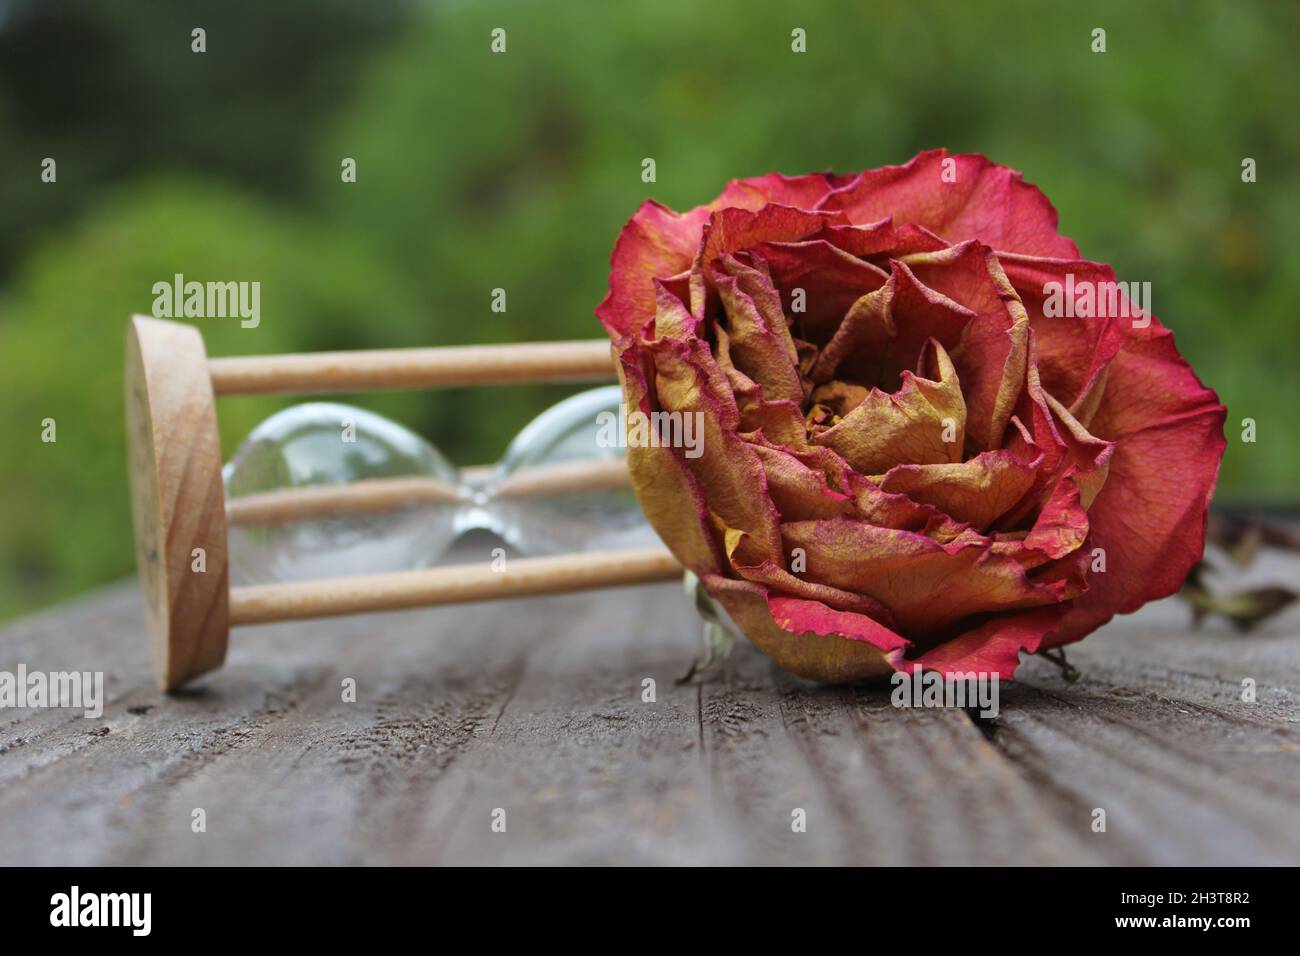 Broken rose immagini e fotografie stock ad alta risoluzione - Alamy